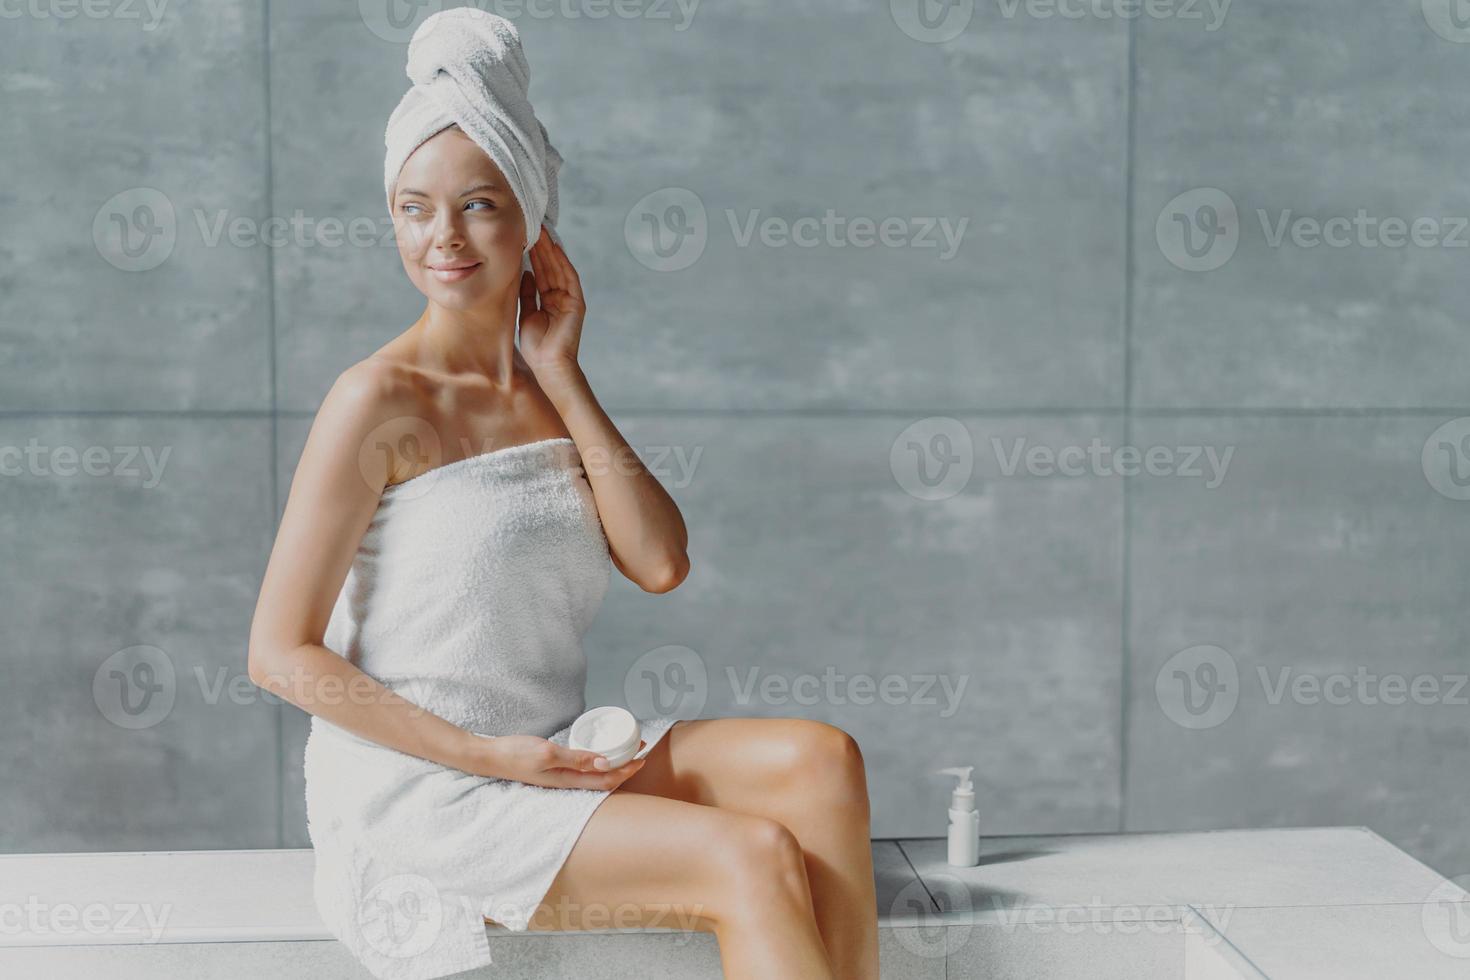 foto av attraktiv eftertänksam ung kvinna tittar bort med drömmande uttryck, lägger kräm på kroppen efter att ha badat, har ren fräsch hud, poserar med bara axlar, tycker om att ta spabehandlingar